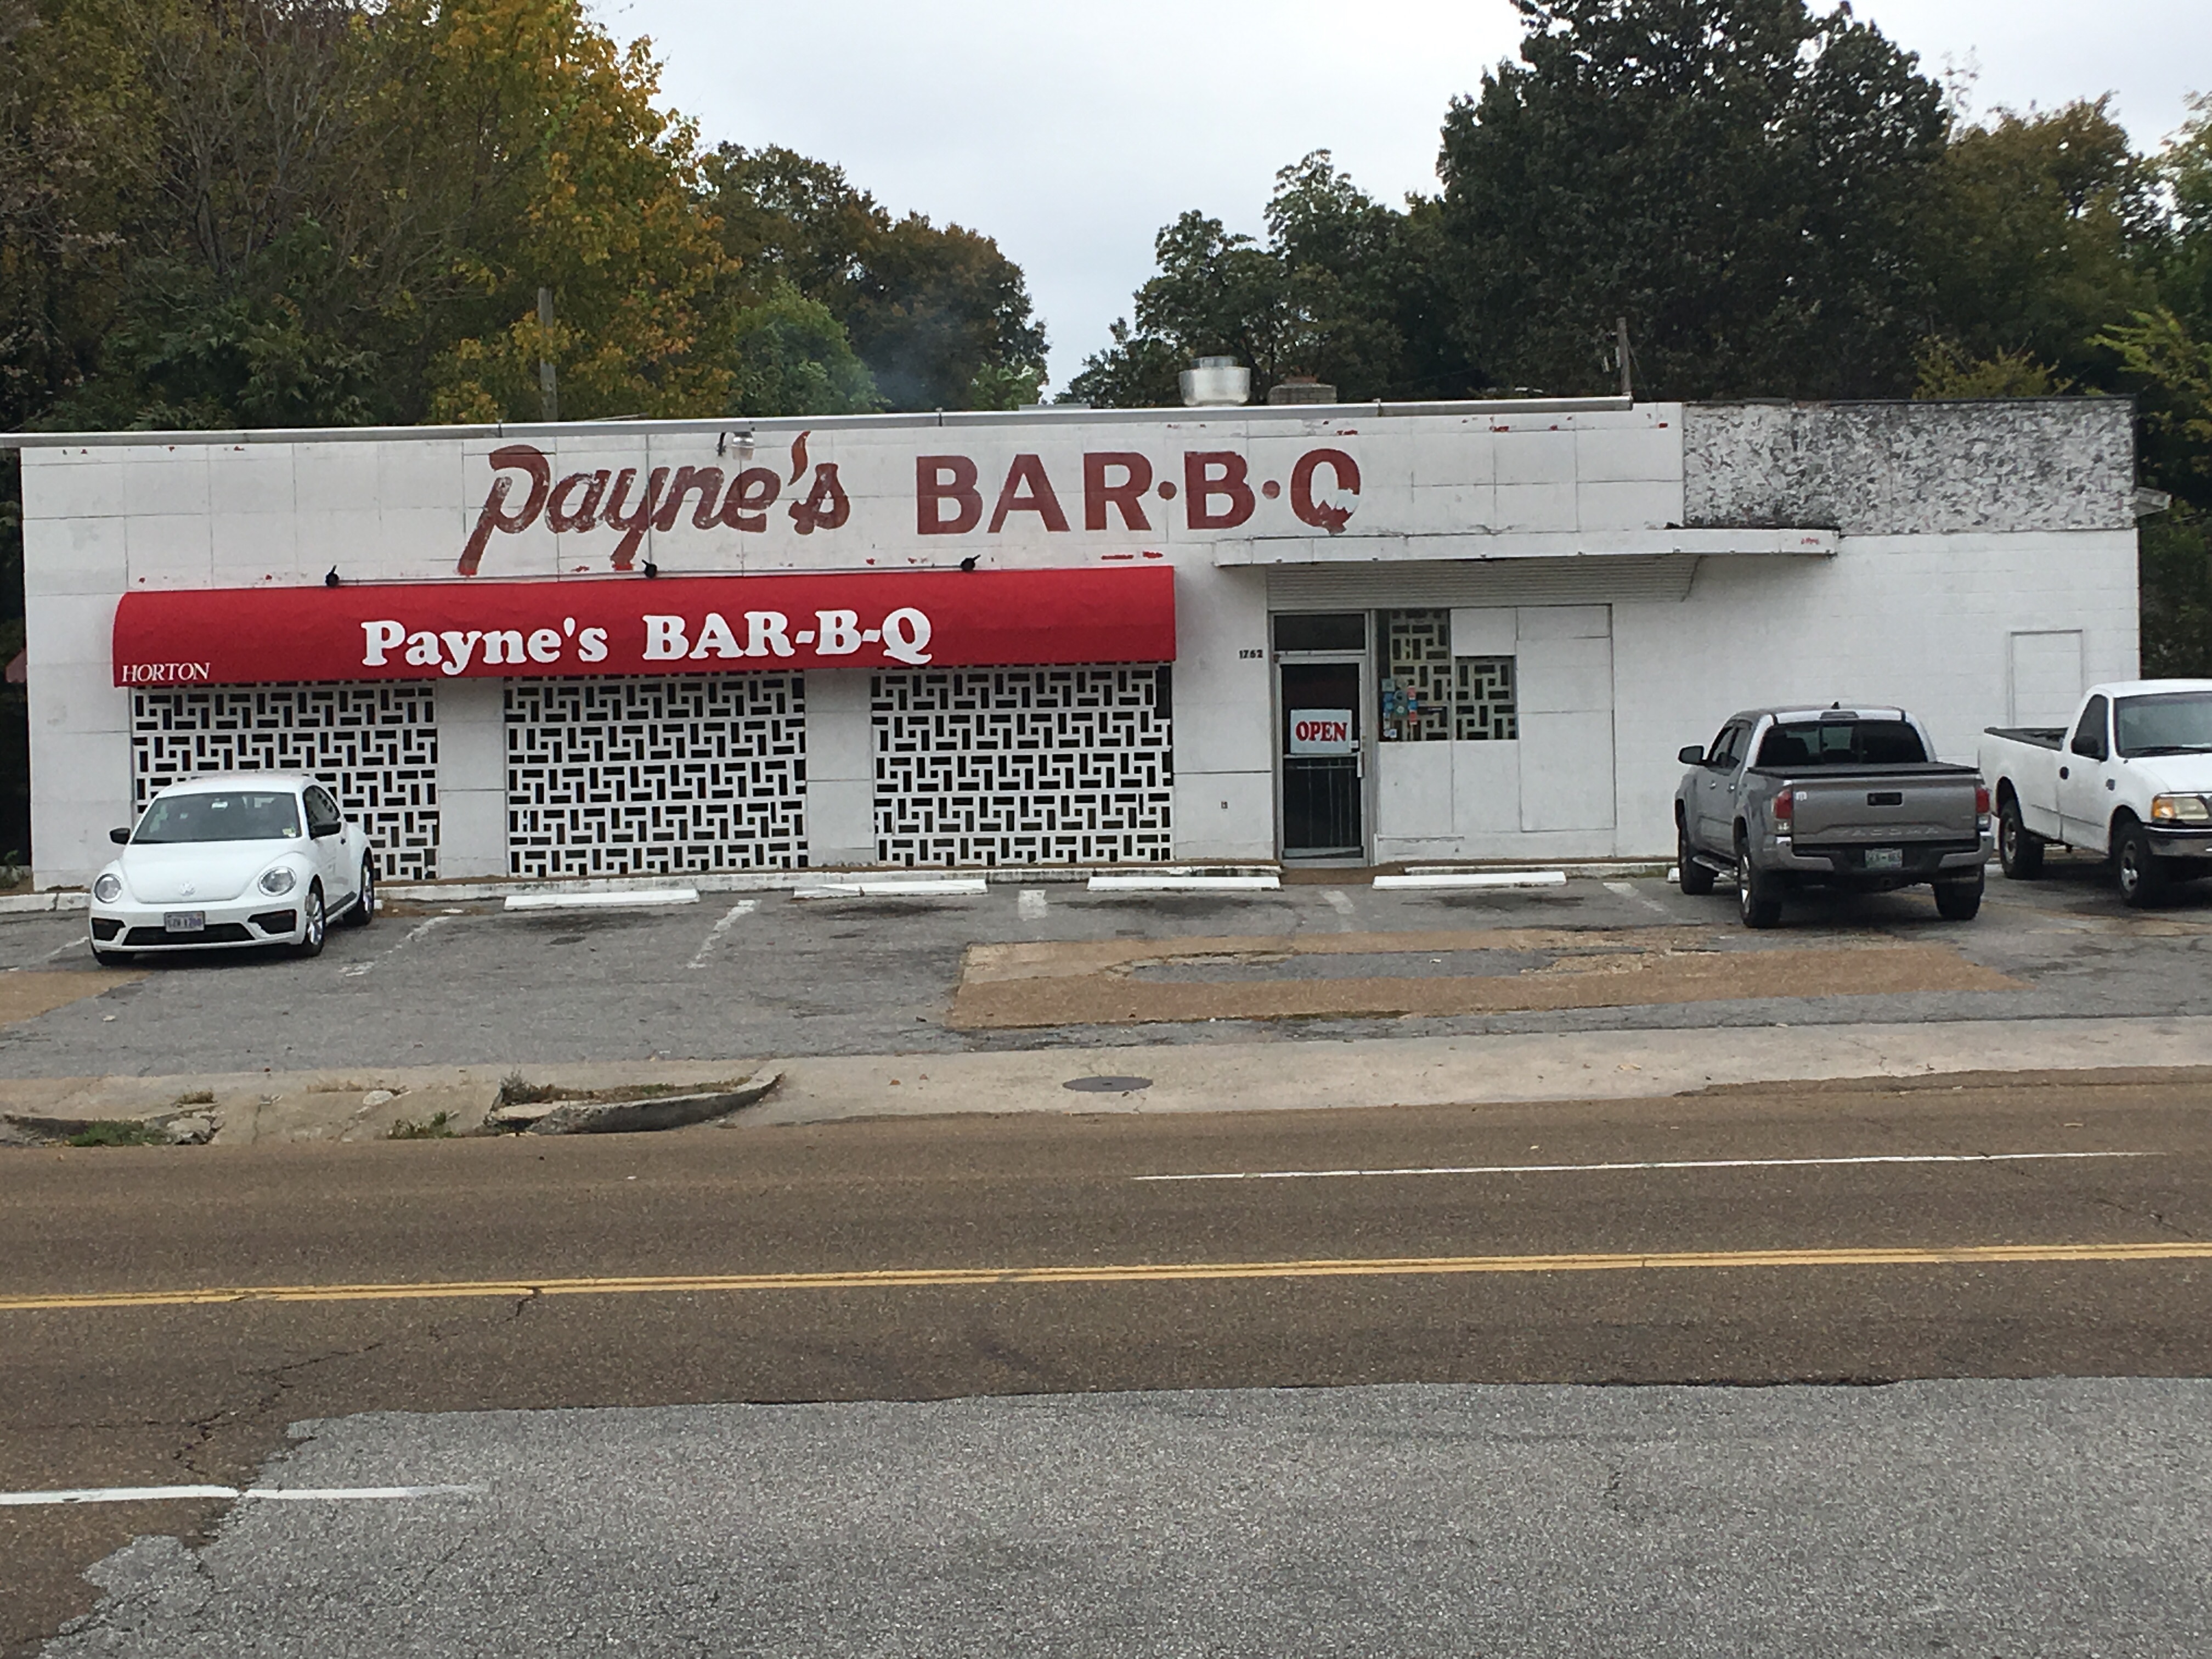 Payne's BAR-B-Q